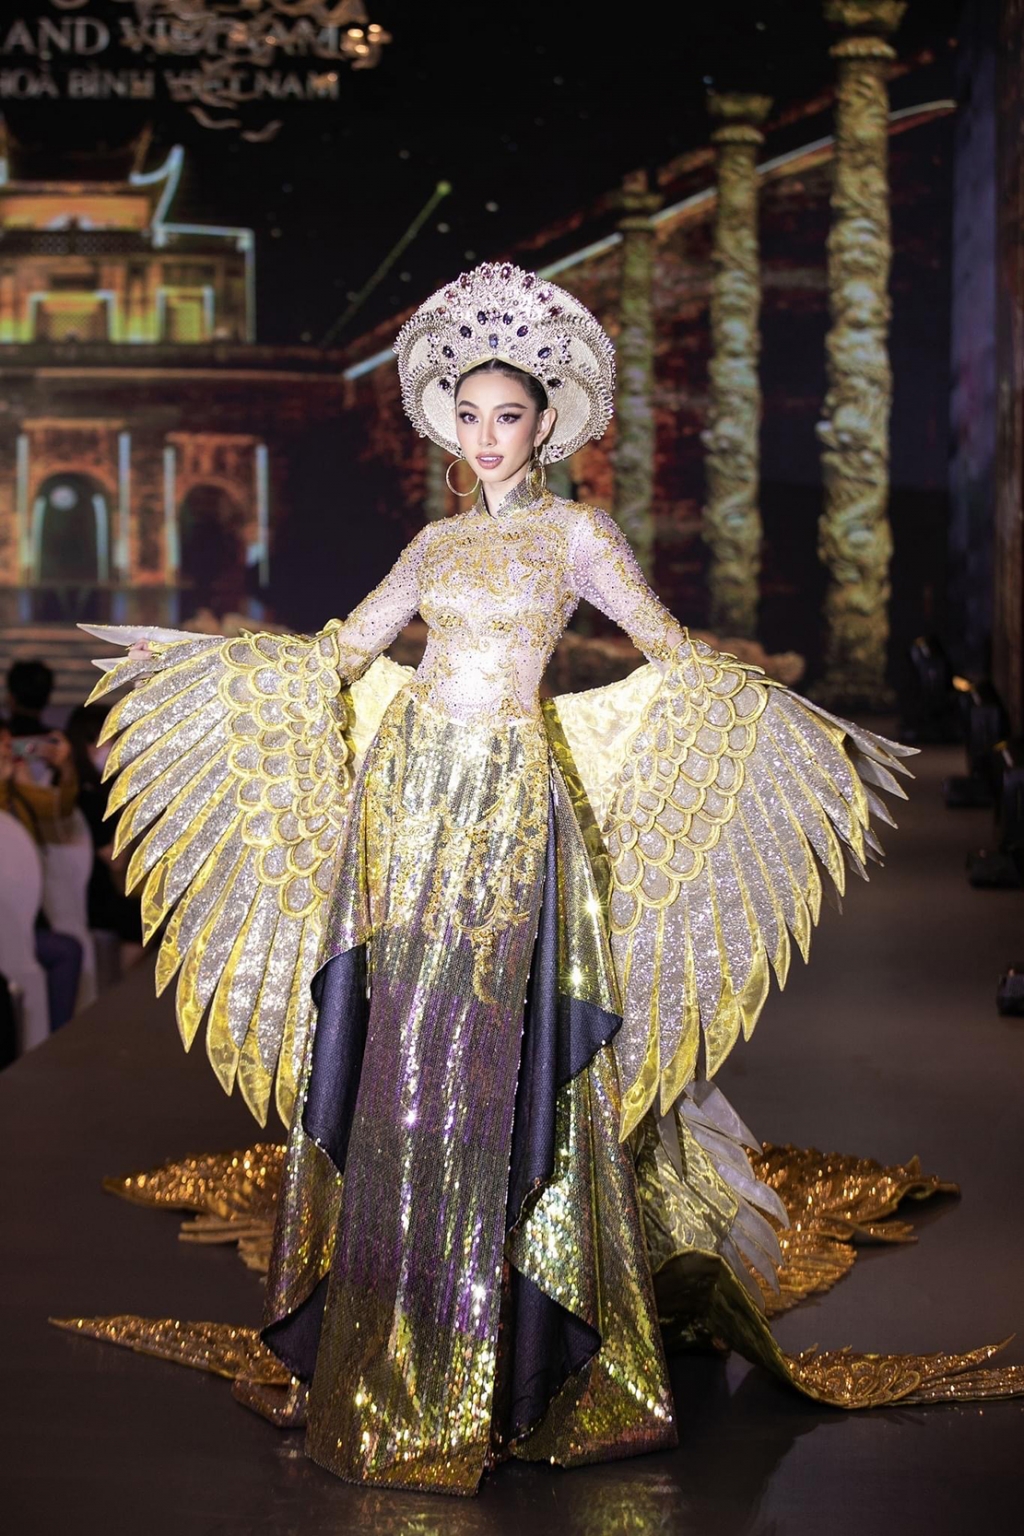 Việt Nam chính thức đăng cai tổ chức 'Miss Grand International - Hoa hậu Hòa bình Quốc tế 2023'